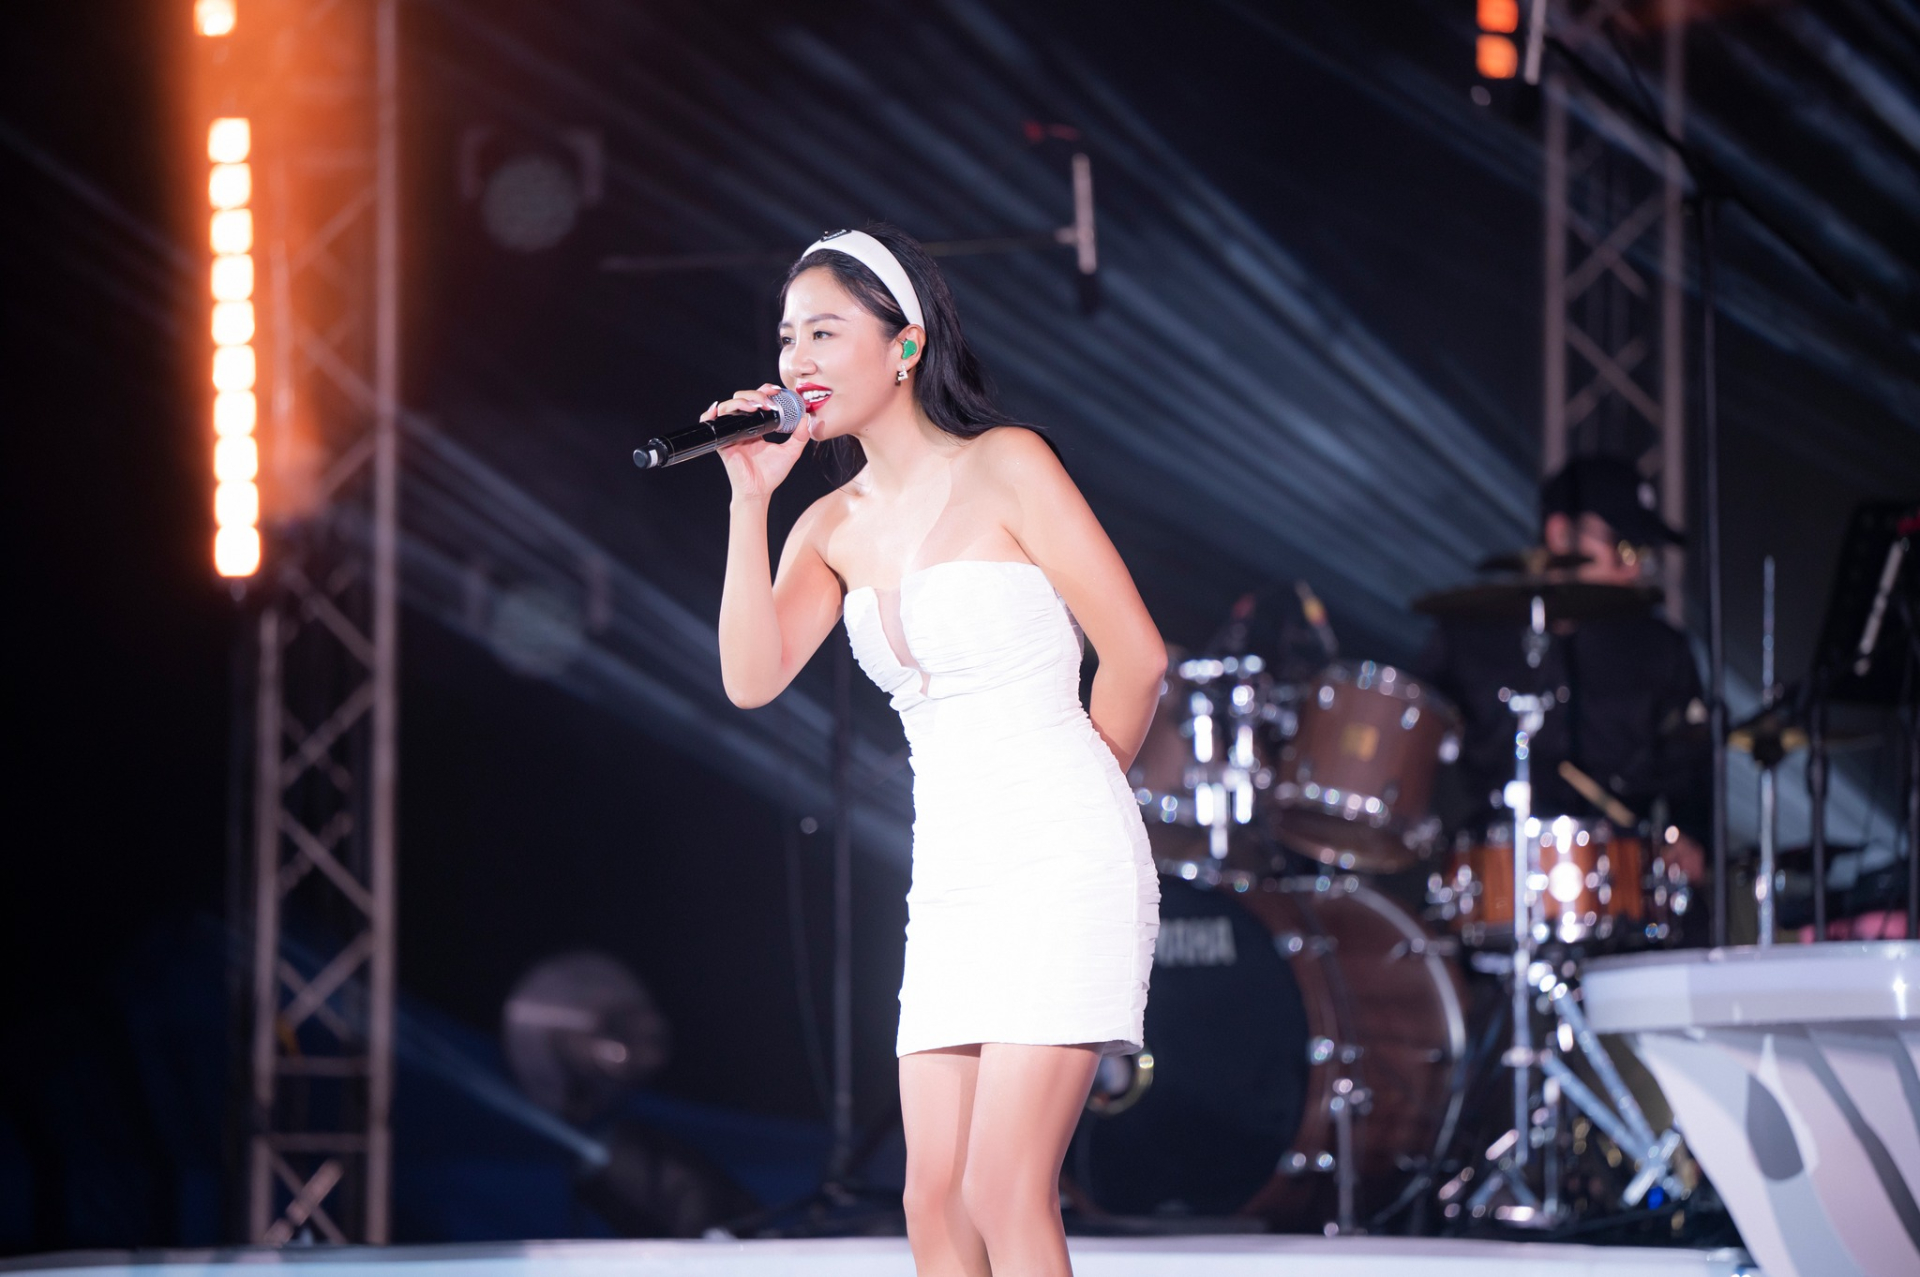 Giọng hát của Văn Mai Hương được đánh giá cao, nhất là trong những màn hát live của nữ ca sĩ.